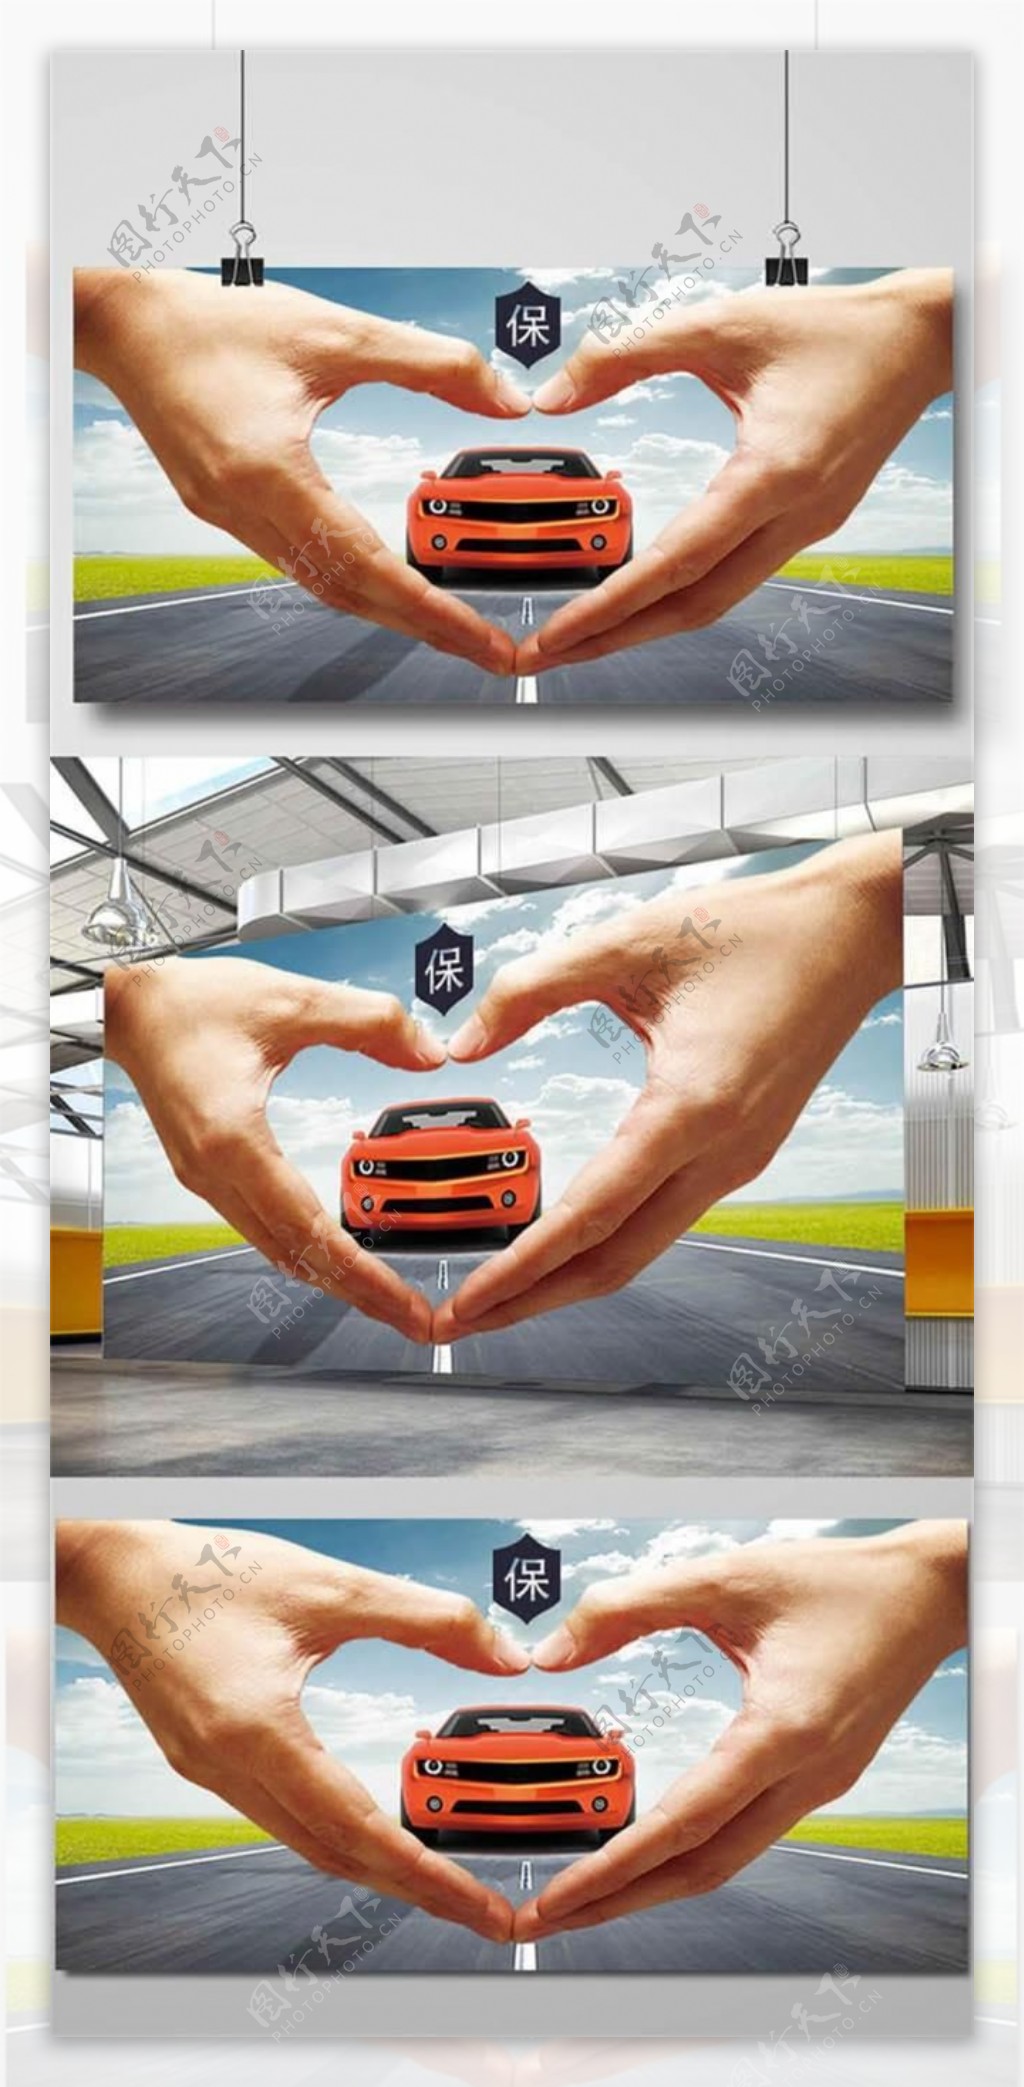 简约创意汽车保险广告设计psd素材